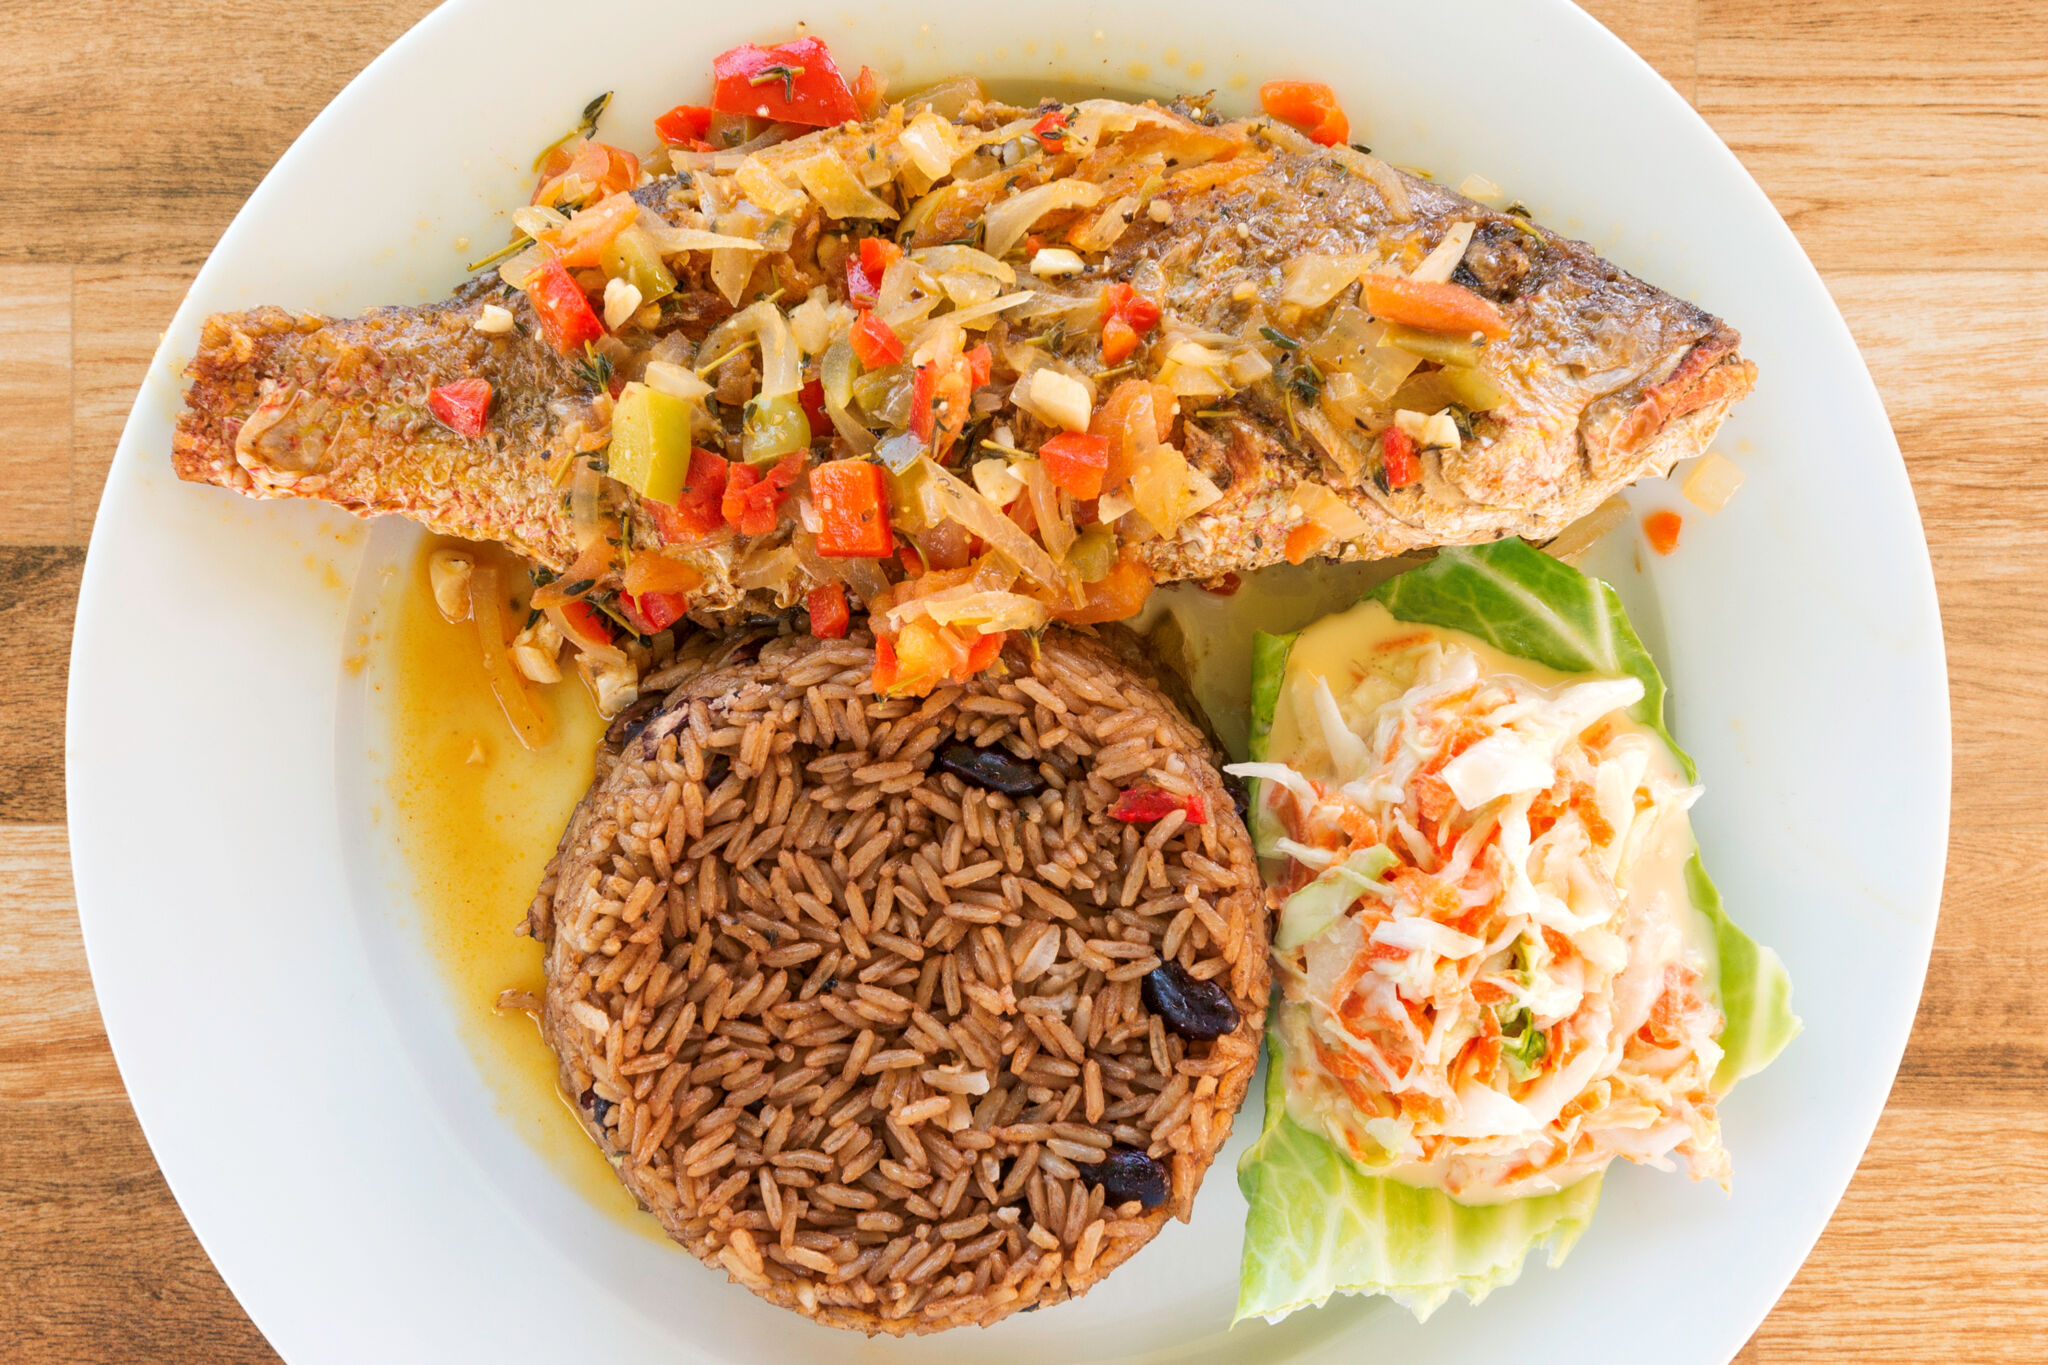 bahamas national dish